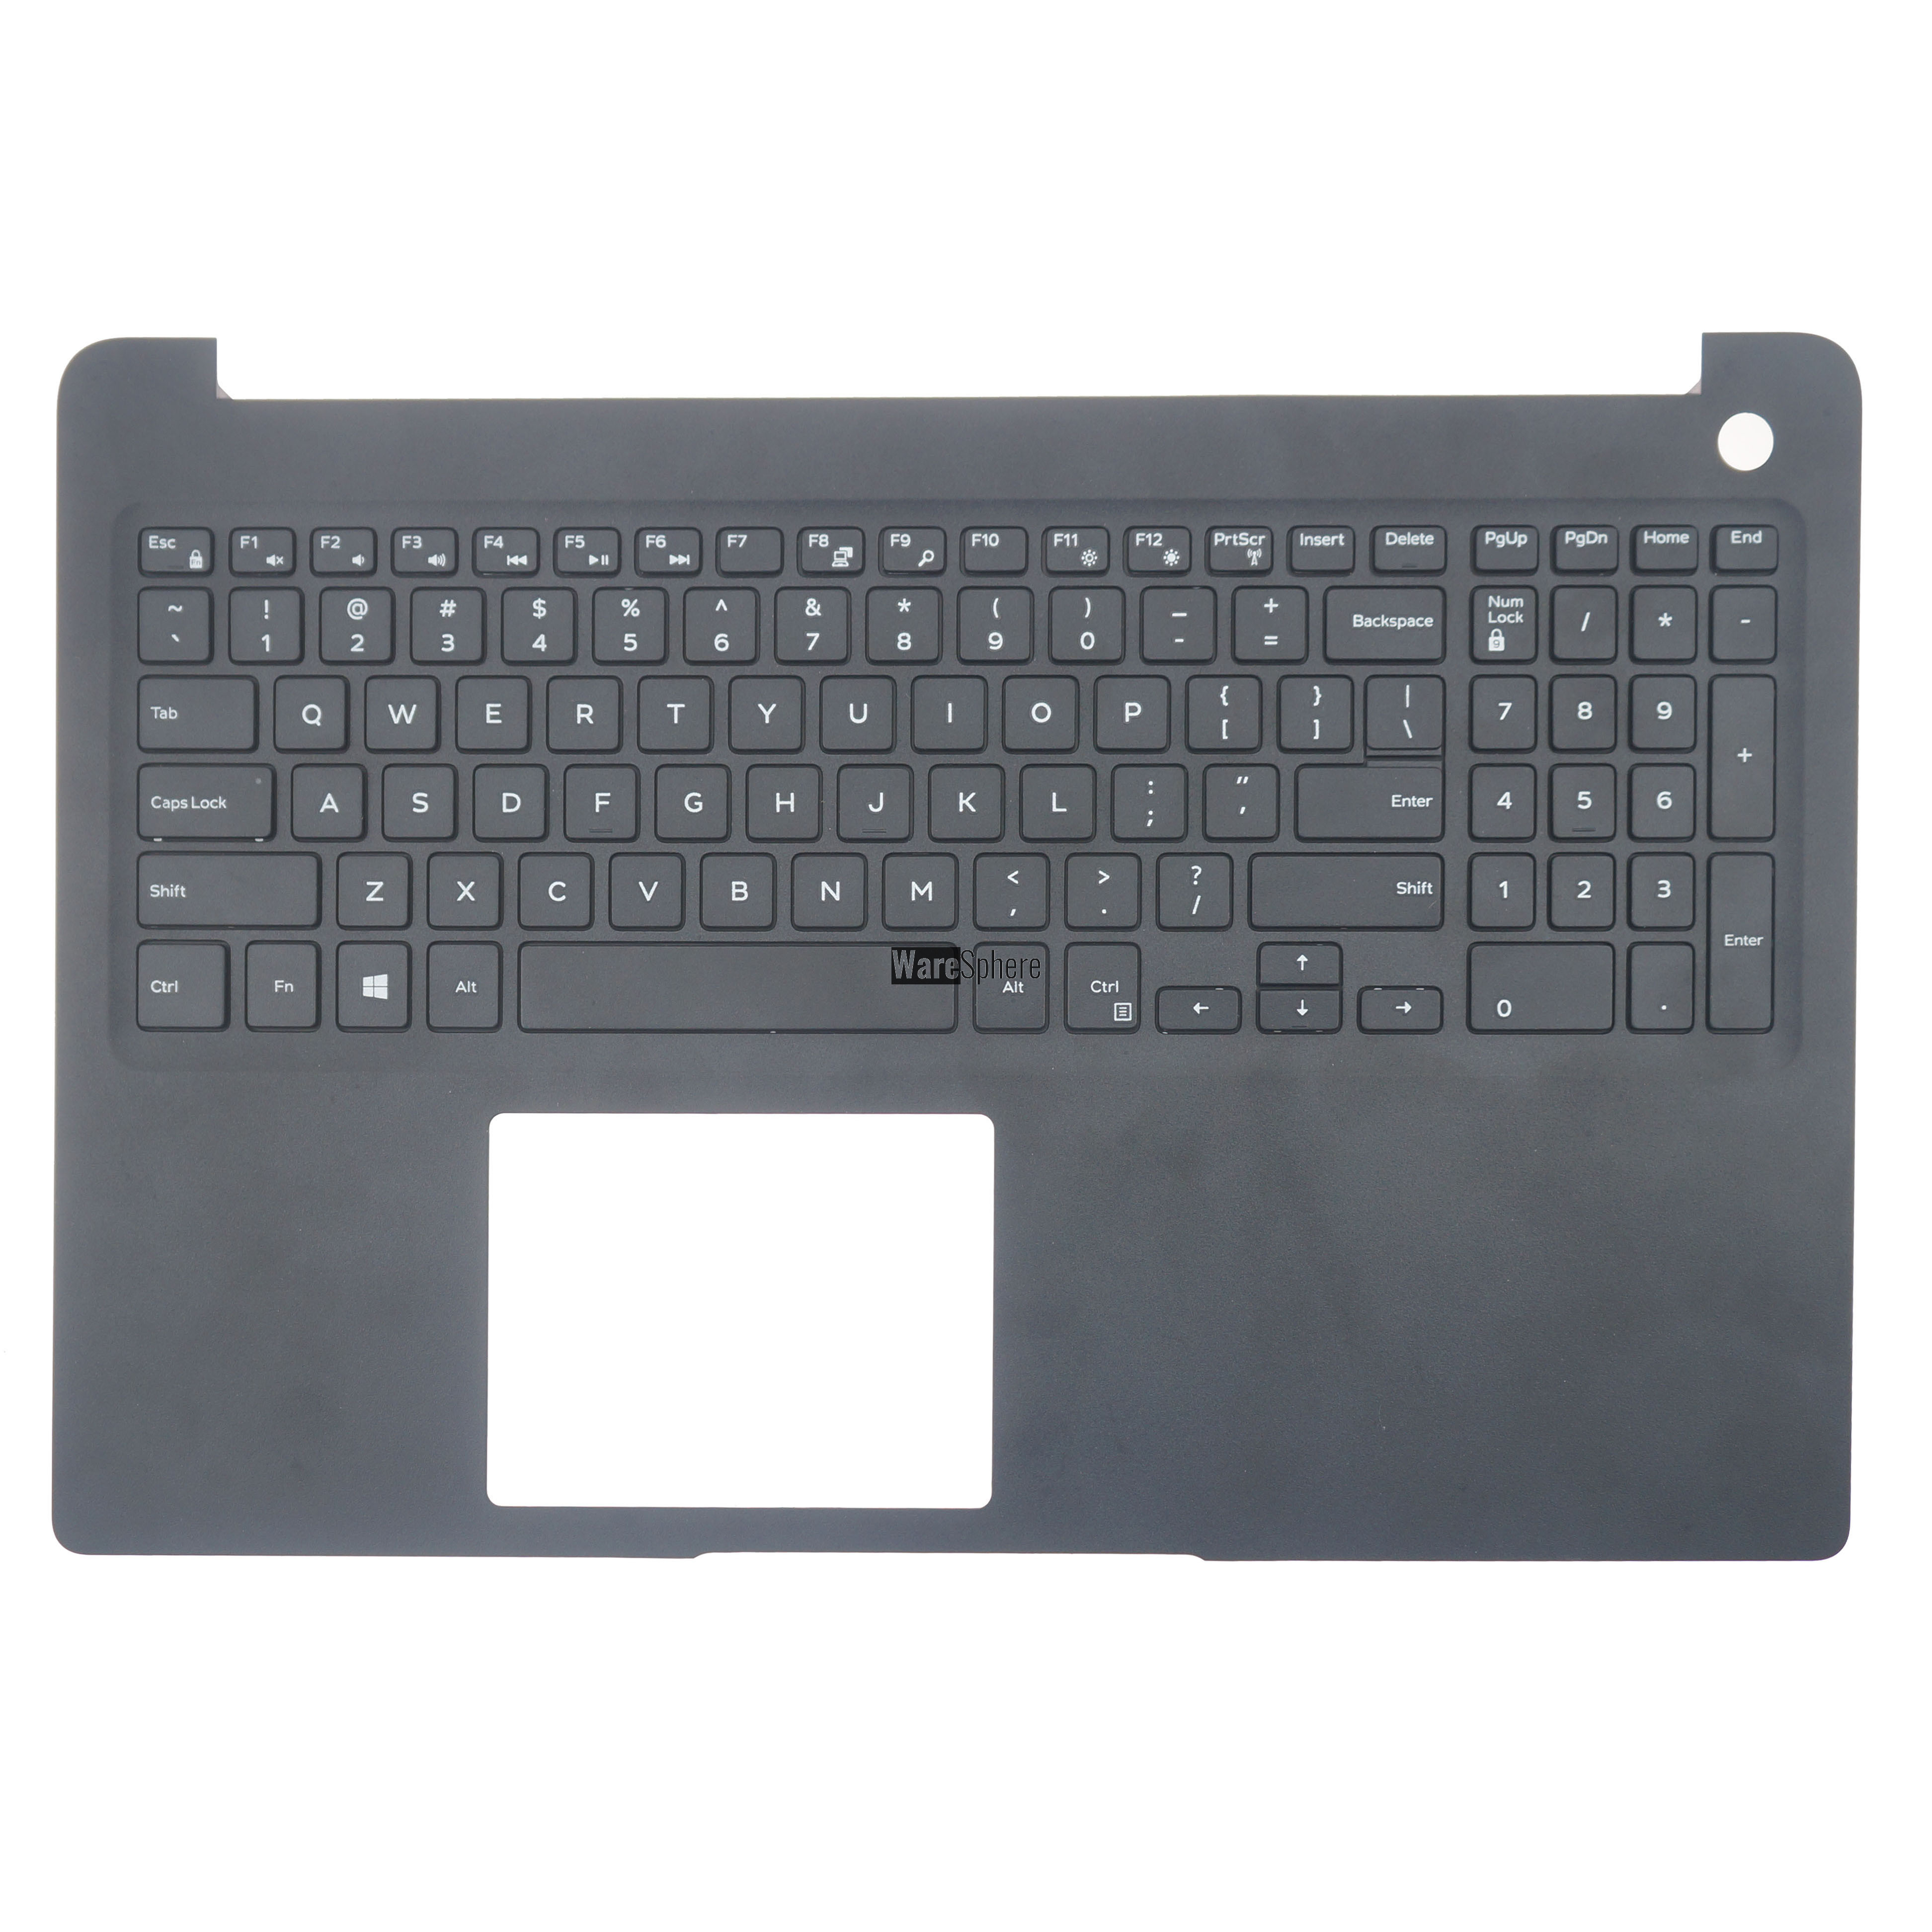 Top Cover Upper Case for Dell Latitude 15 3500 Palmrest With Nonbacklit Keyboard HV8G2 0HV8G2 Black US